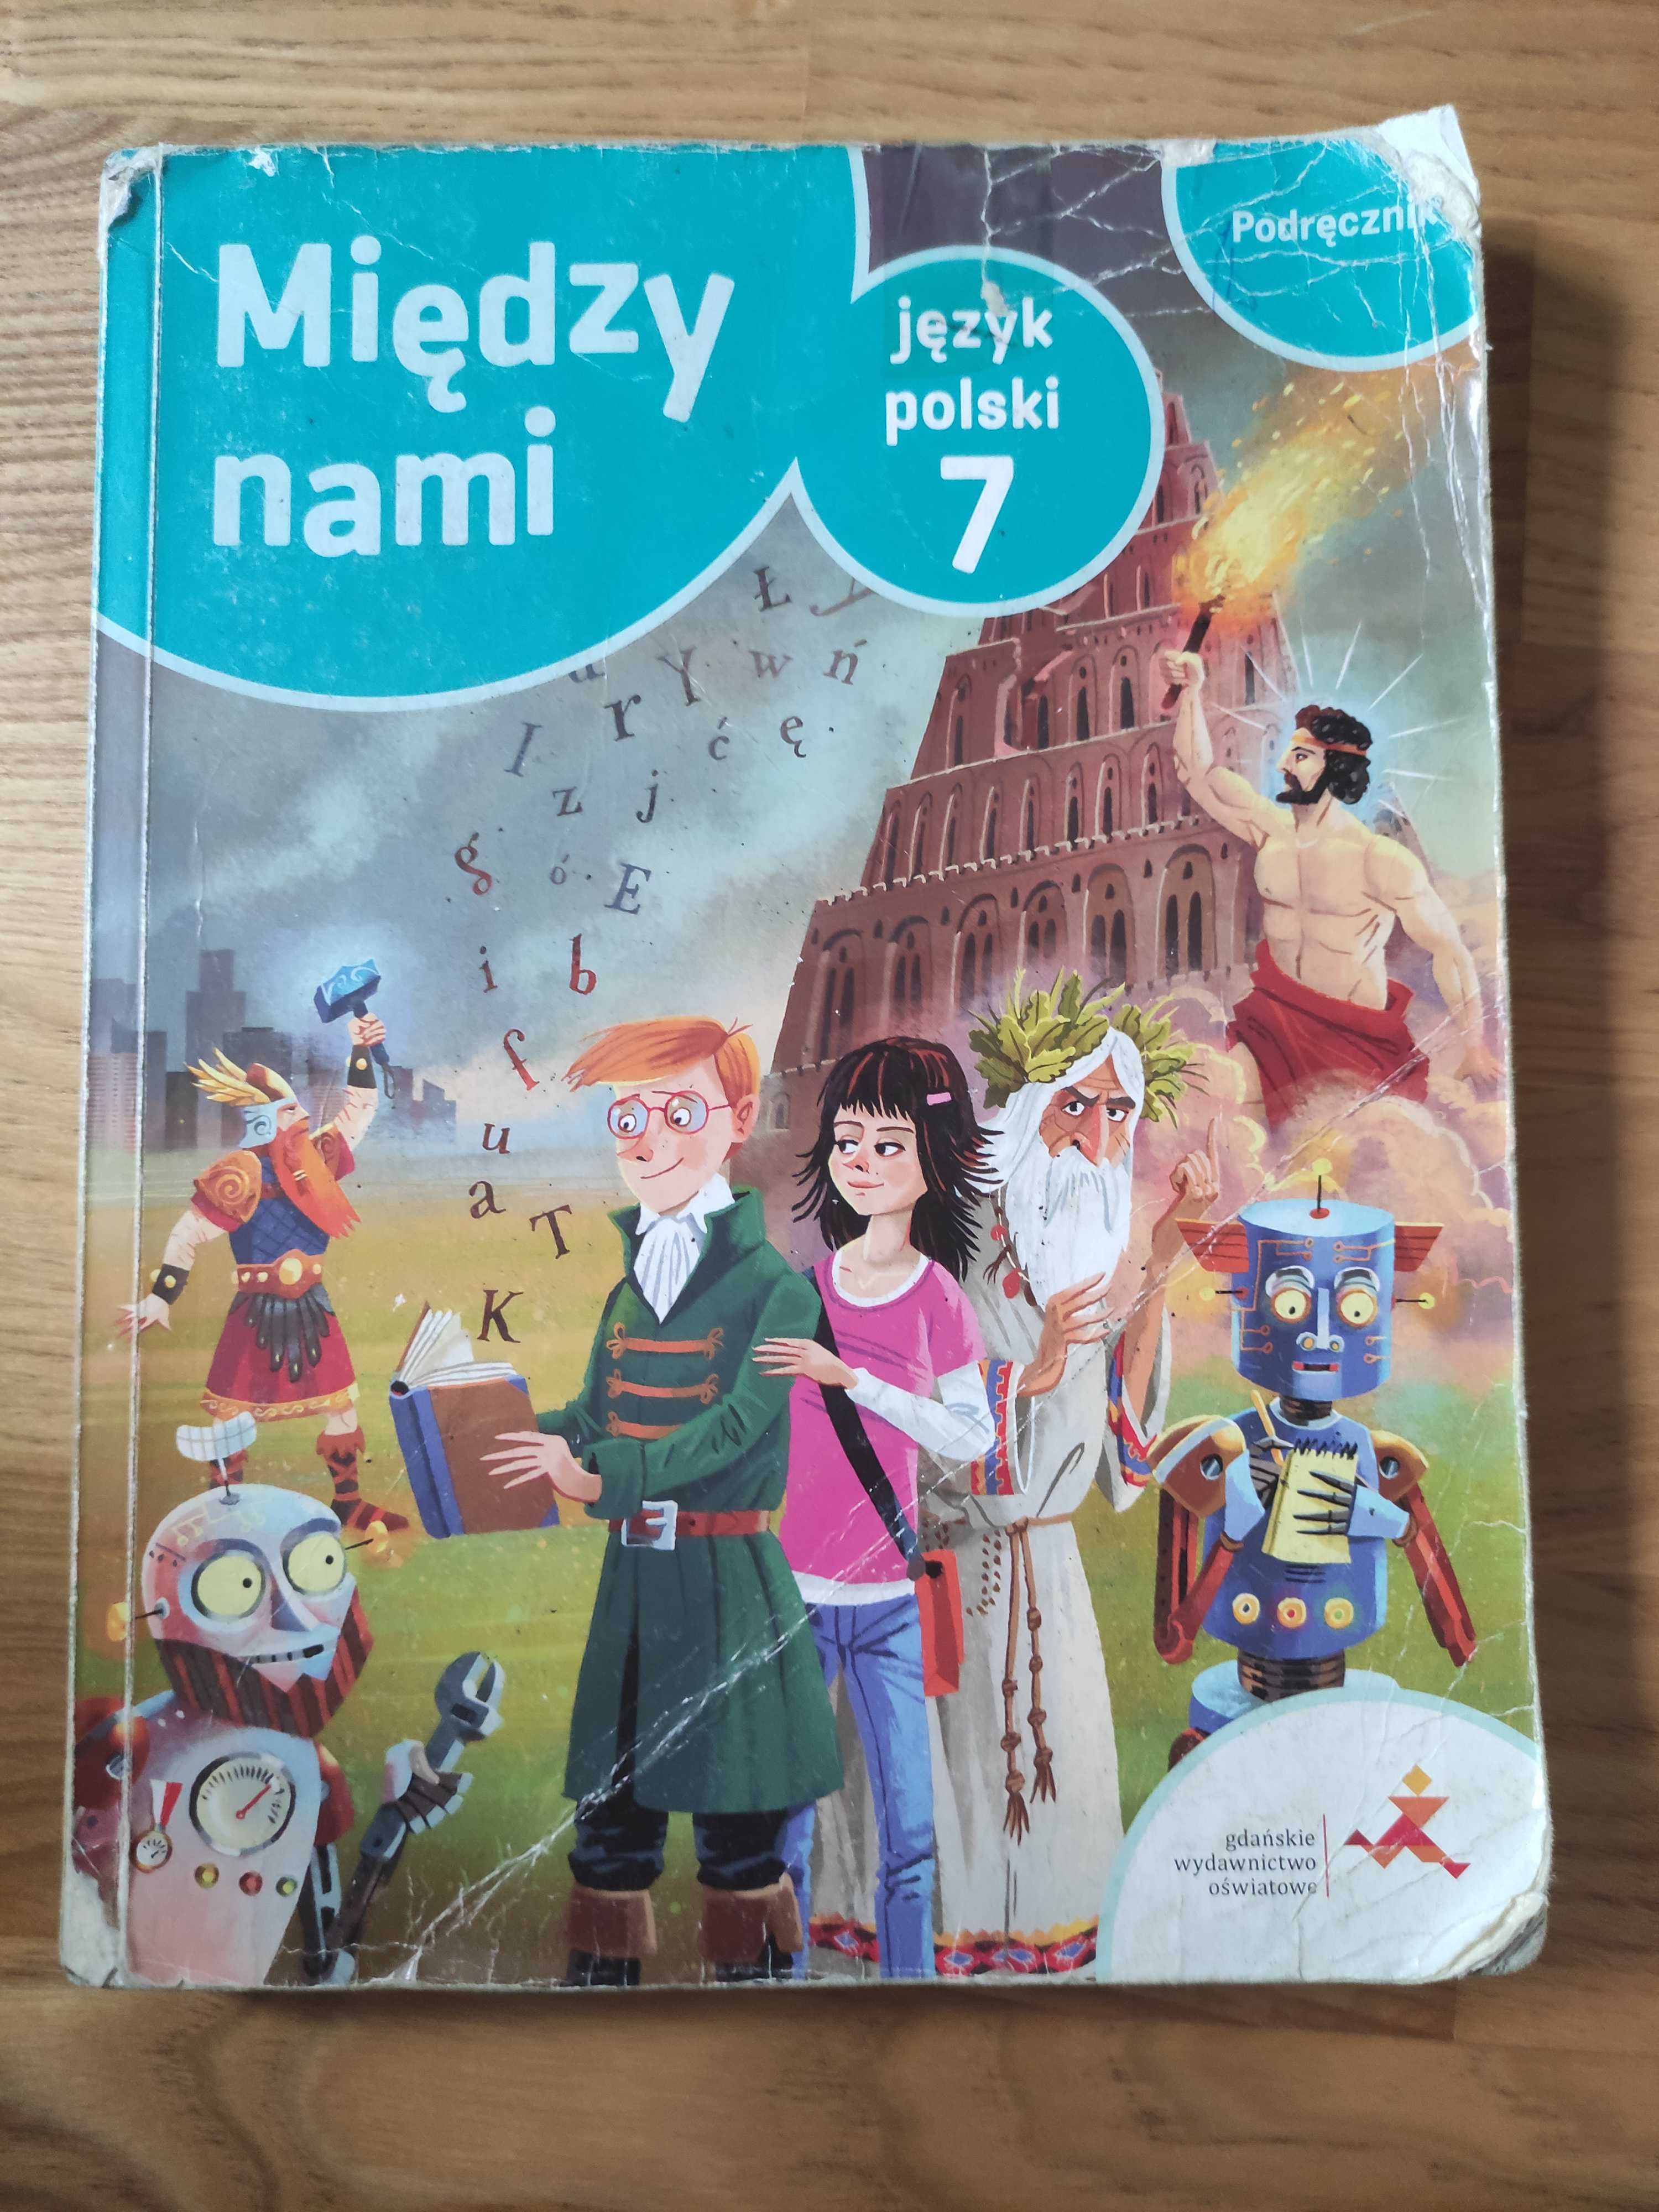 Między nami język polski 7